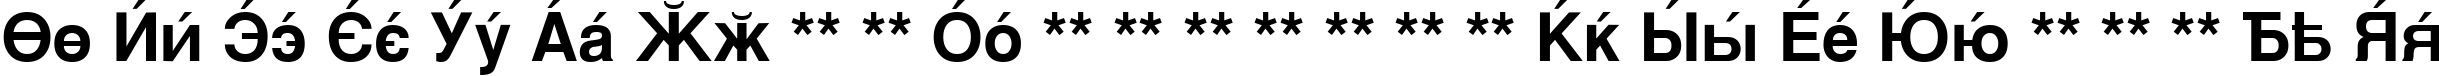 Пример написания английского алфавита шрифтом CyrillicSans Bold